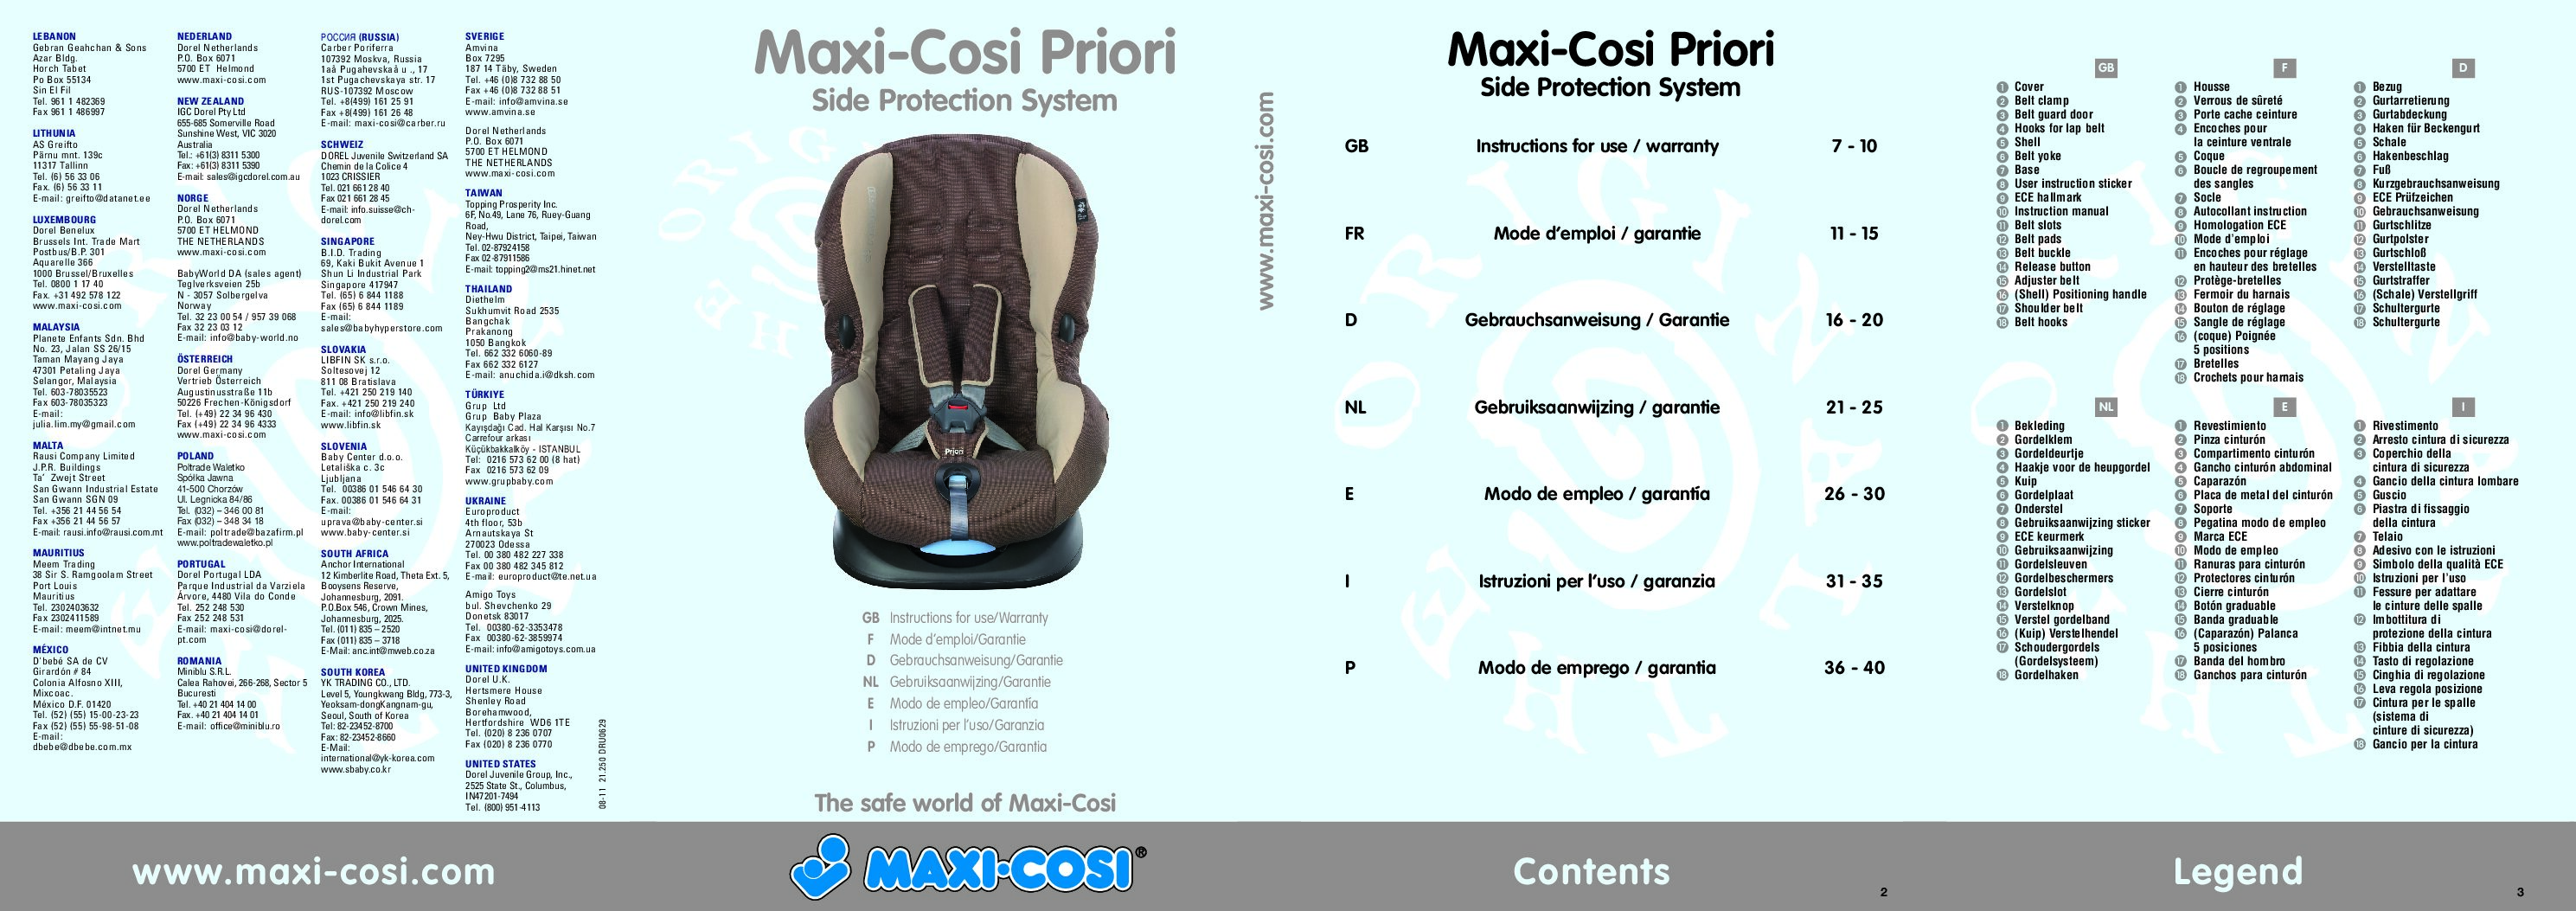 Maxi-Cosi priori sps Bedienungsanleitung